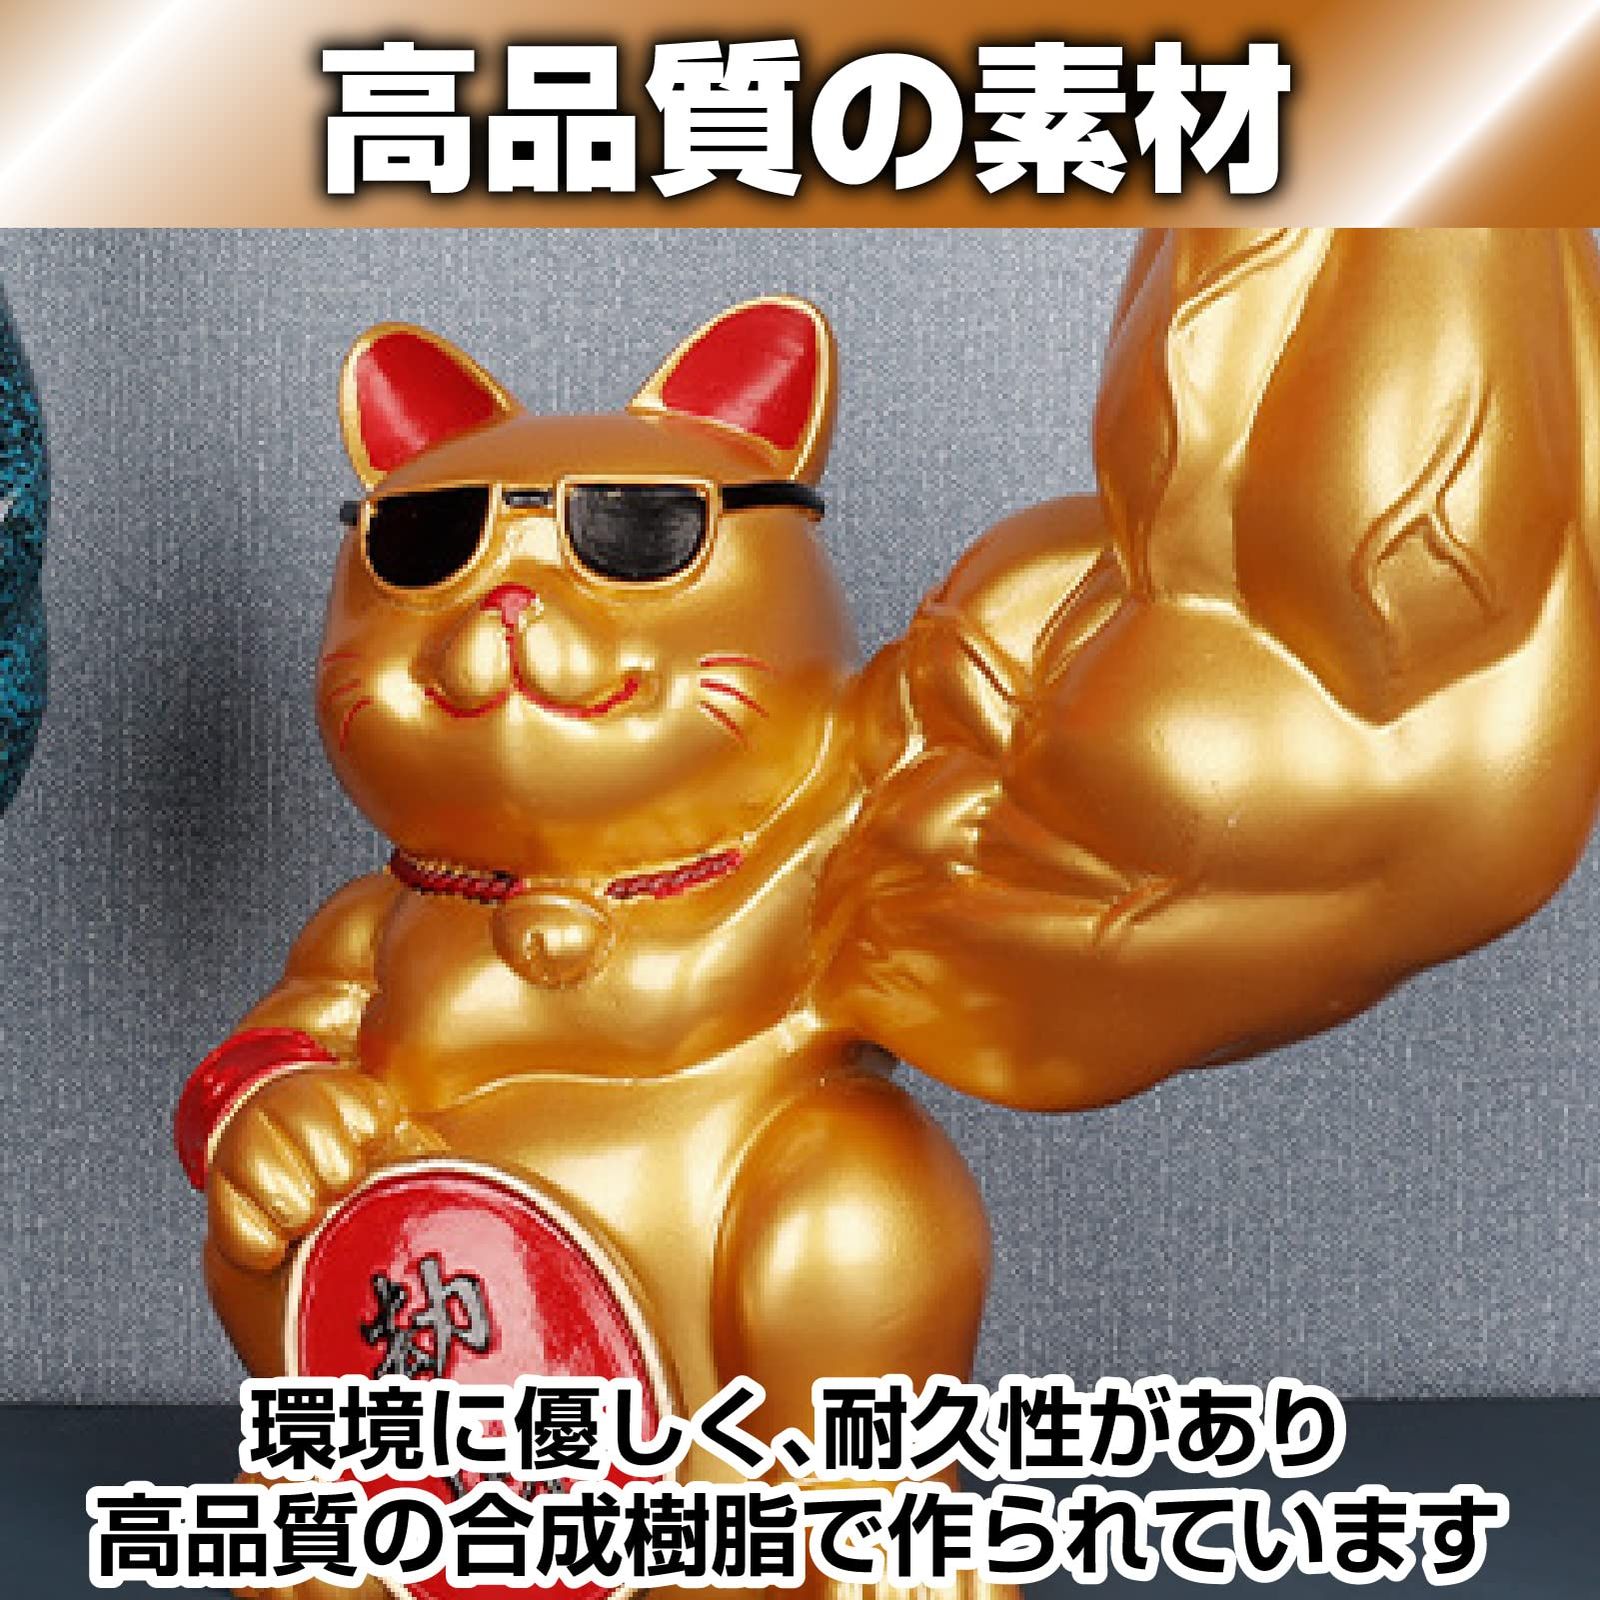 Famimueno 招き猫 筋肉 置物 招福 運気上昇 おもしろ かわいい 開運 ショップ 開店祝い (ゴールド)